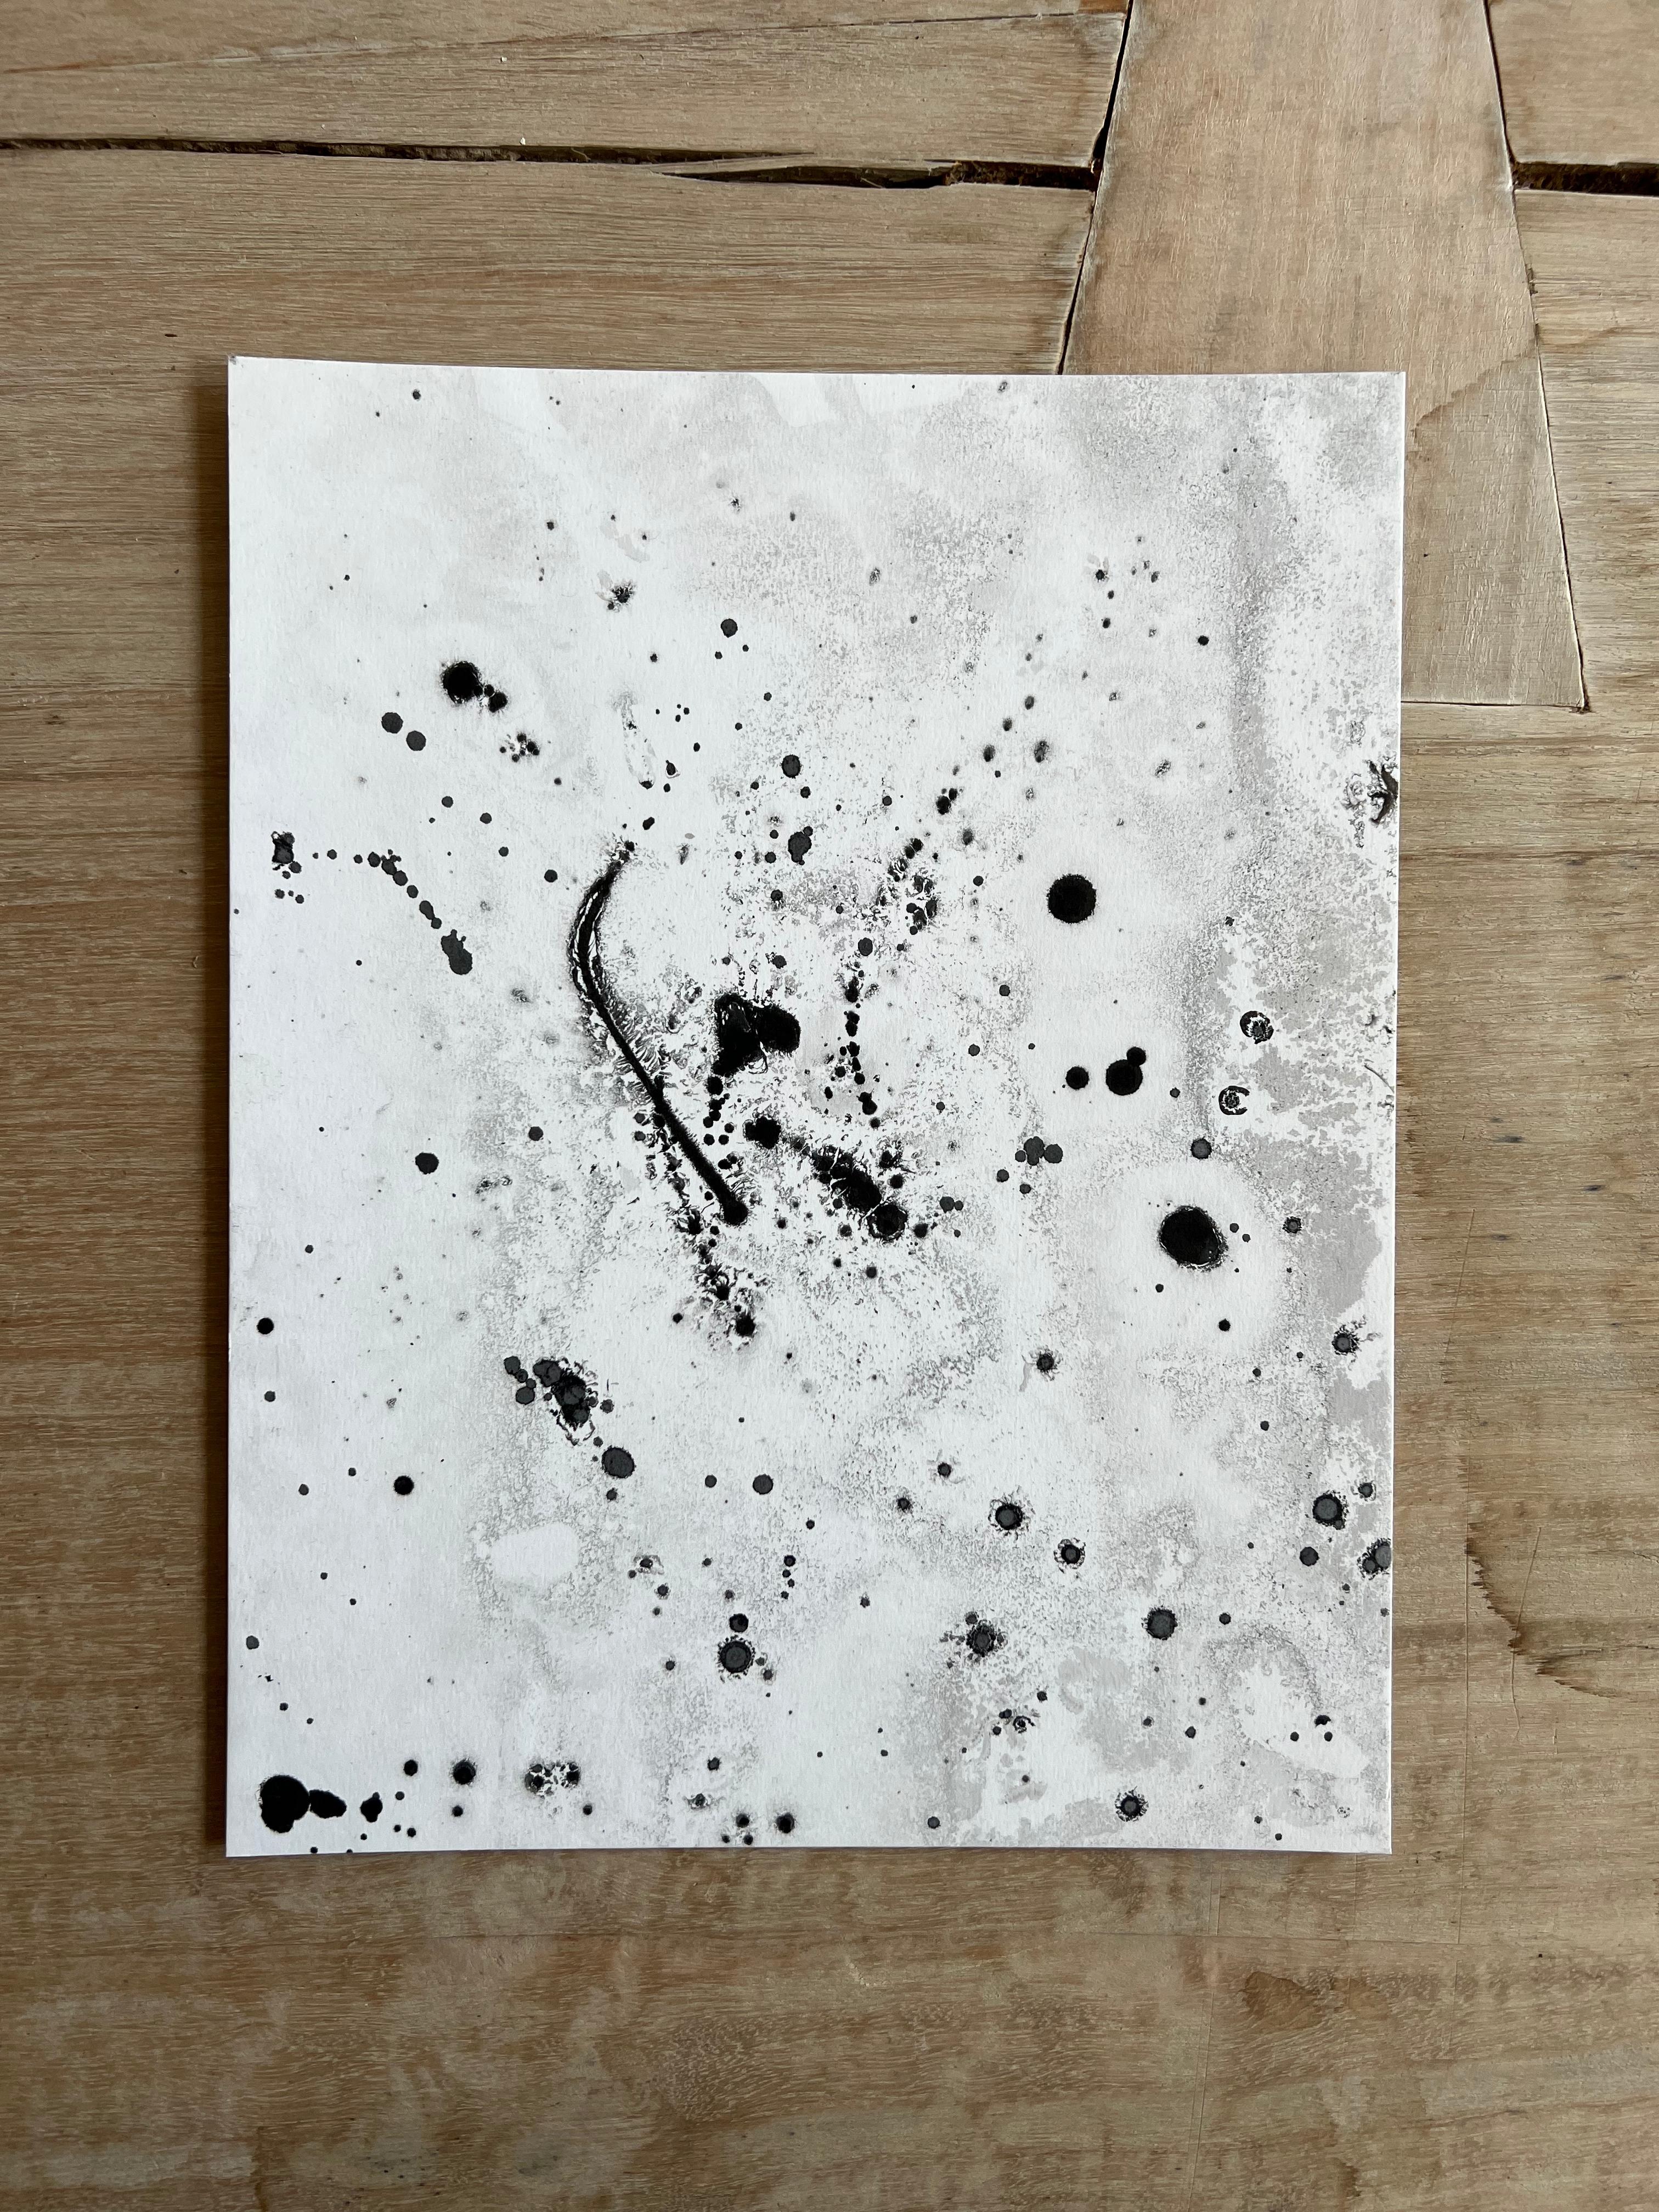 Schwarze Tinte auf weißem Papier, Contemporary Abstract Expressionist Painting (Expressionismus), Art, von TUSET